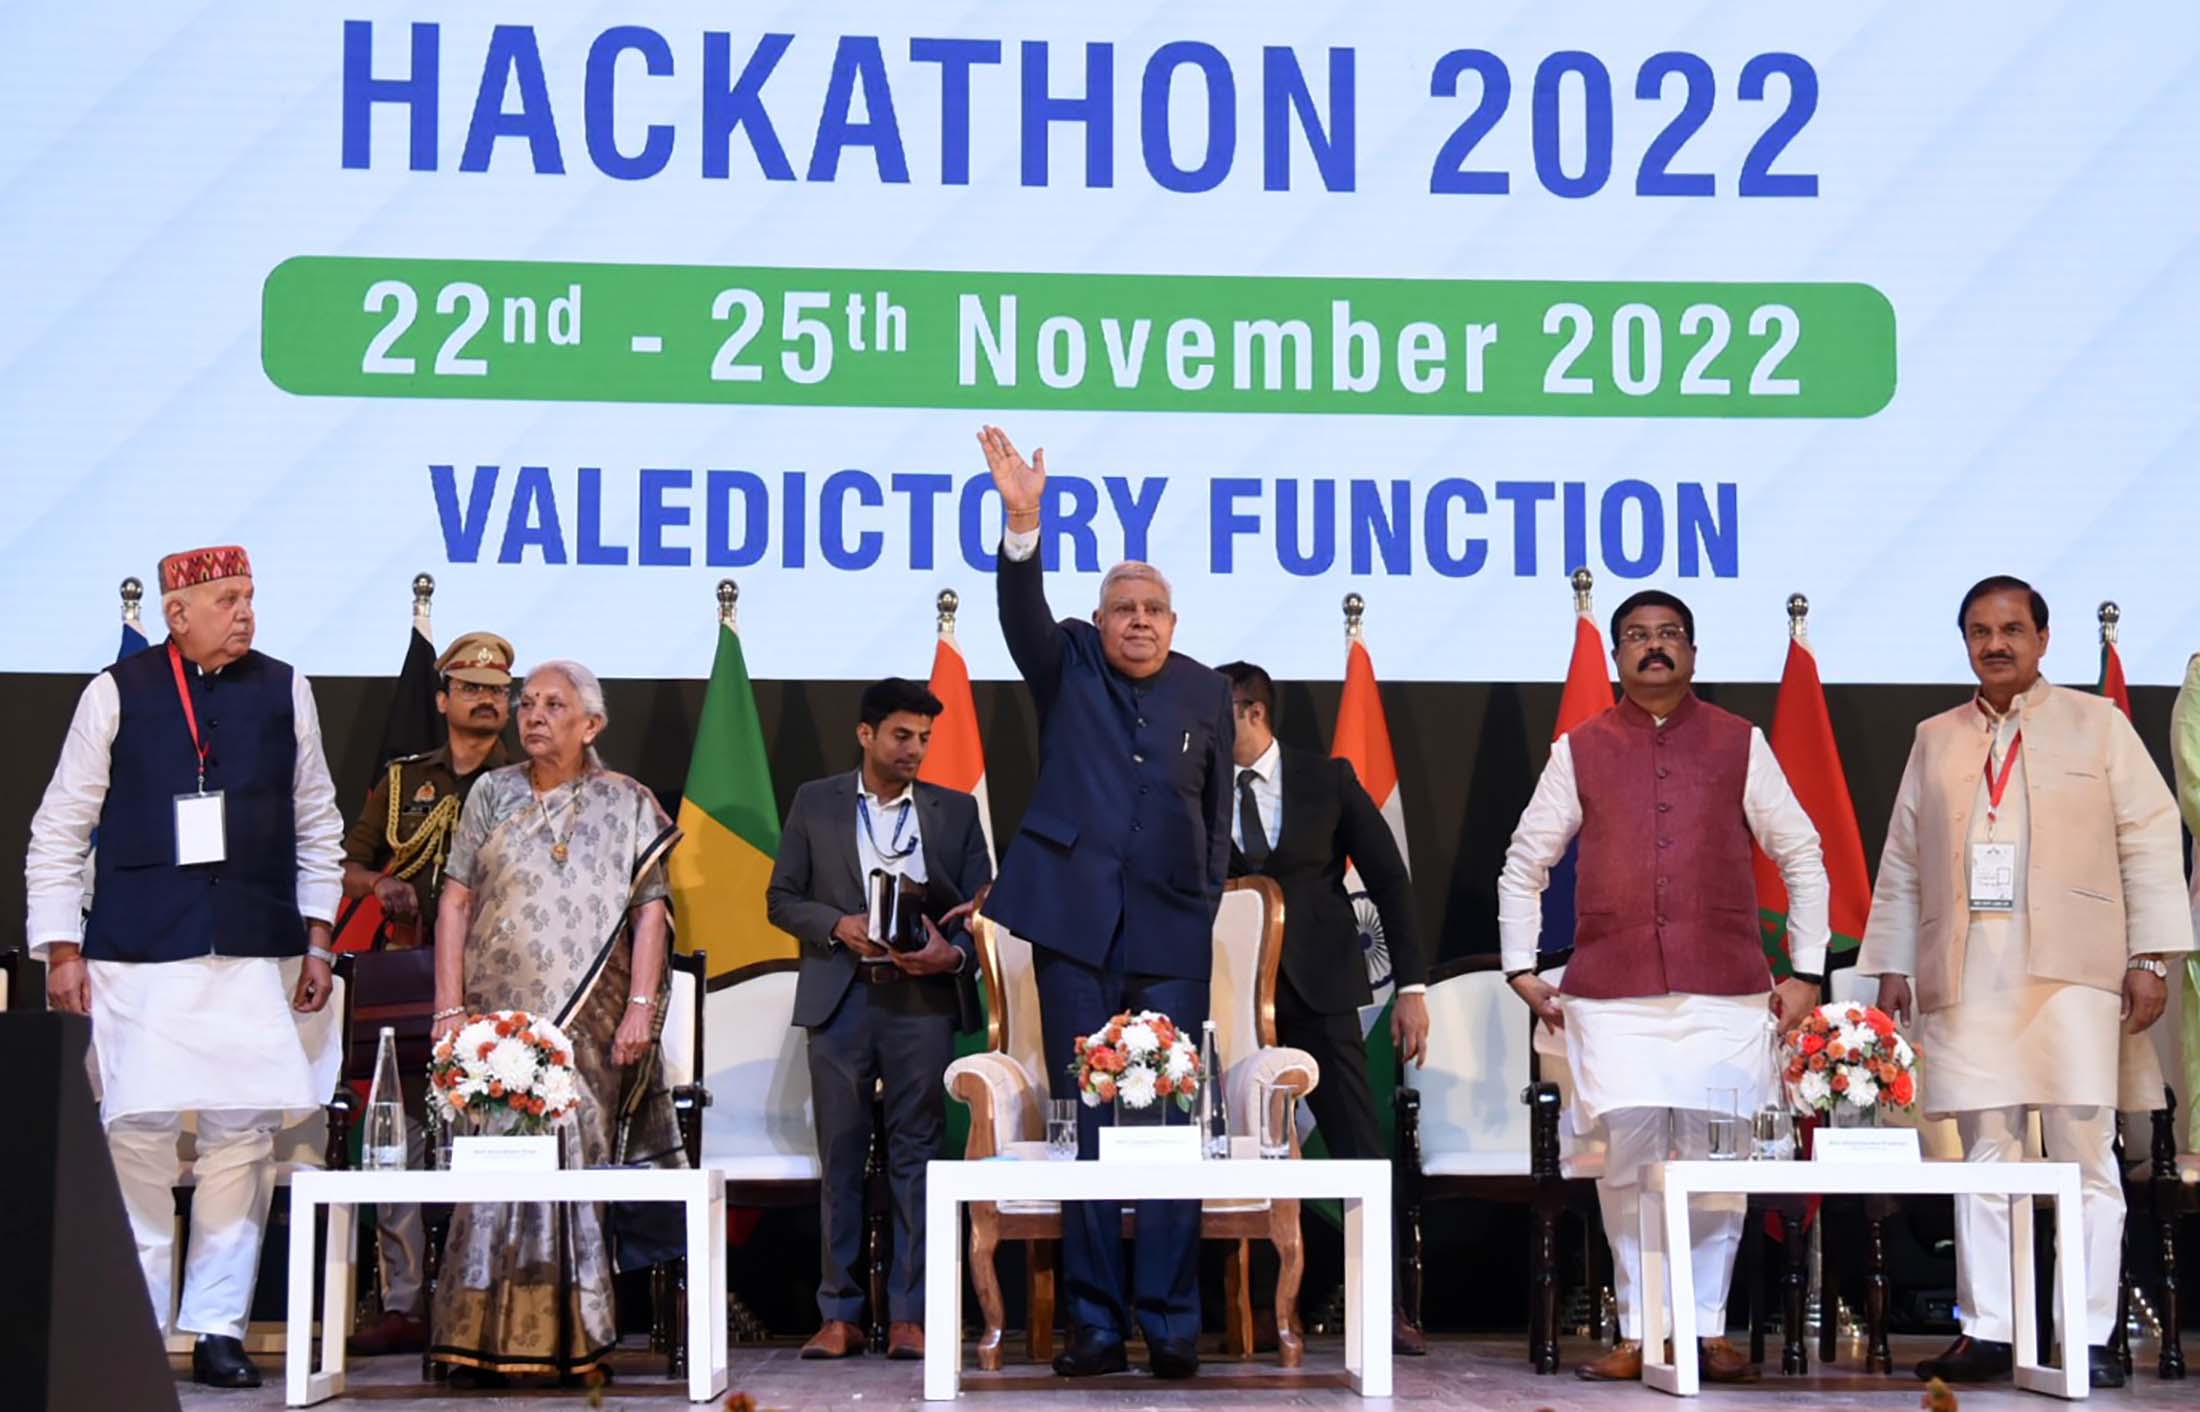 25 नवंबर, 2022 को गौतम बुद्ध विश्वविद्यालय, गौतम बुद्ध नगर, उत्तर प्रदेश में यूनेस्को इंडिया अफ्रीका हैकथॉन 2022 के समापन सत्र के दौरान उपराष्ट्रपति श्री जगदीप धनखड़।